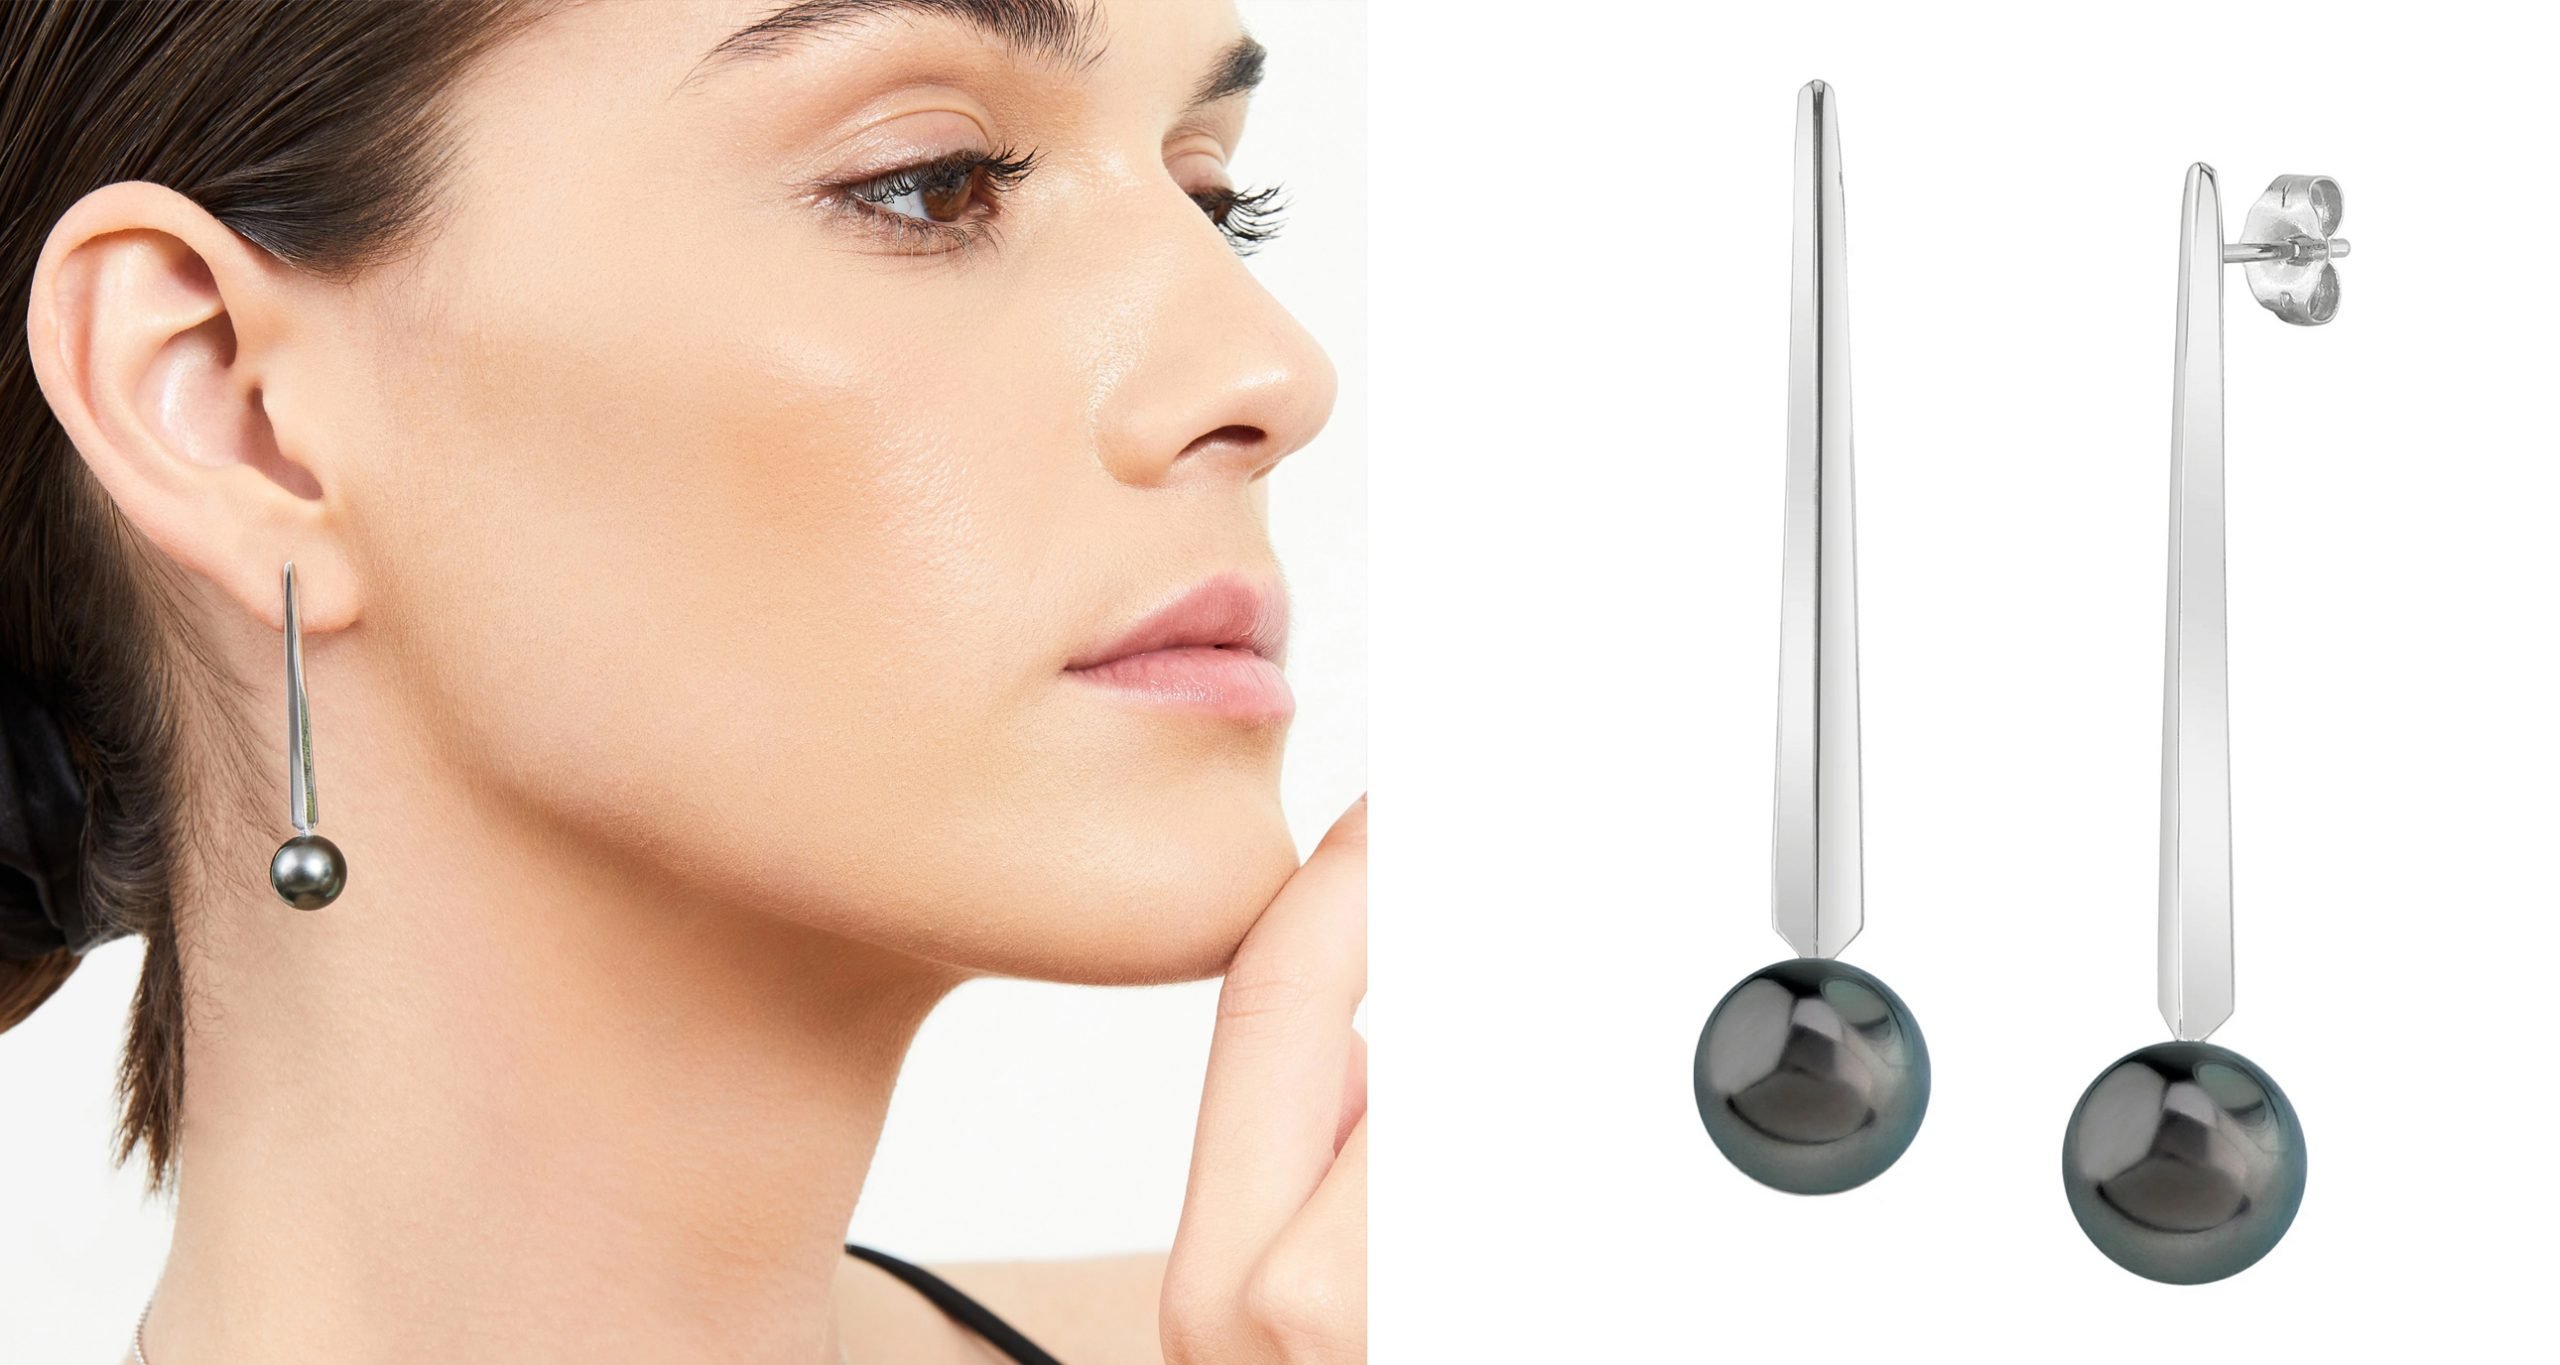 Helix Piercing Star Earrings Women 1pc Trend 2023 Zircon Lobe Rook Piercing  Tragus Daith Cartilage Ear Jewelry Body Accessories